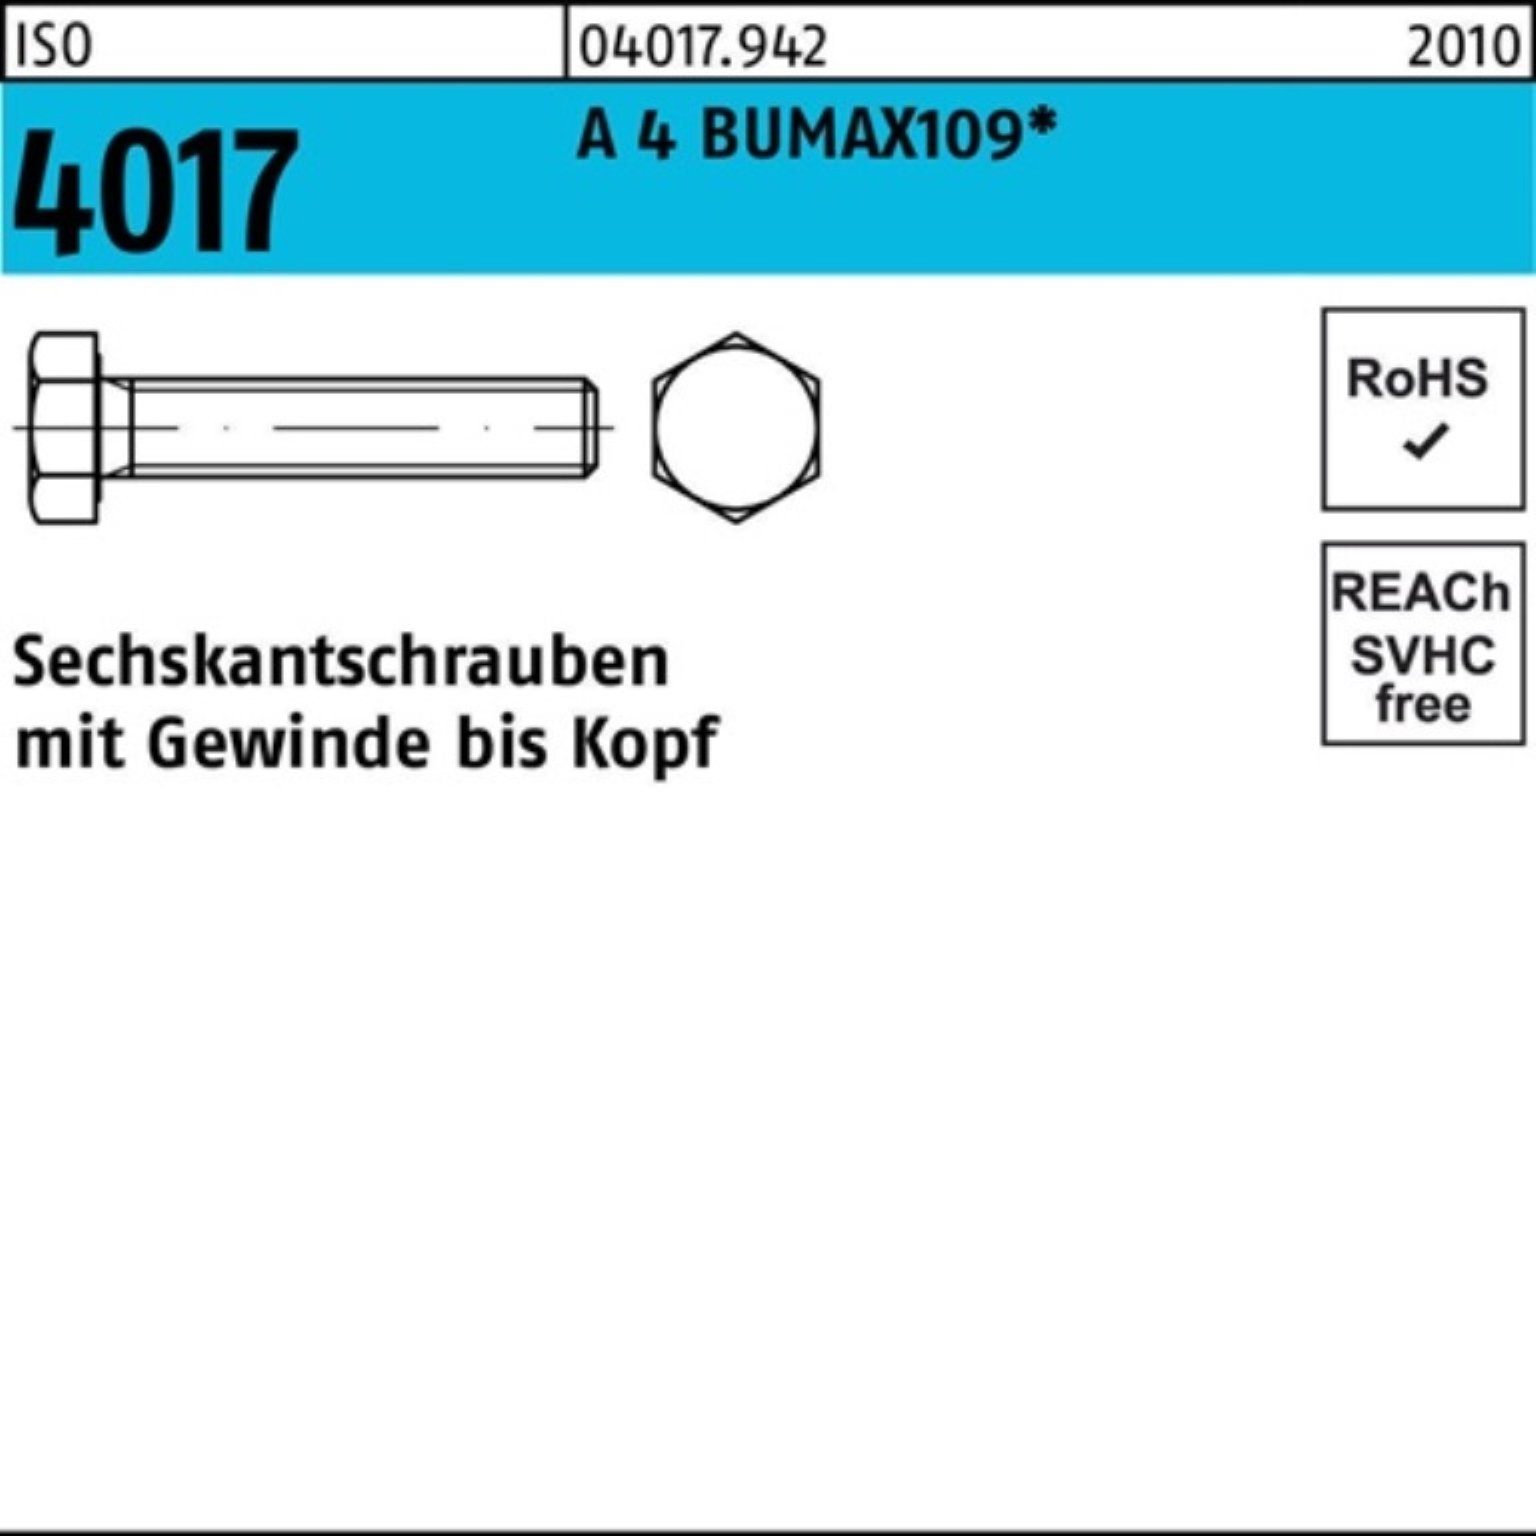 Nummer 1 Sonderpreis! Bufab Sechskantschraube Stüc BUMAX109 ISO M16x VG 100er 4017 A Sechskantschraube 4 50 Pack 25